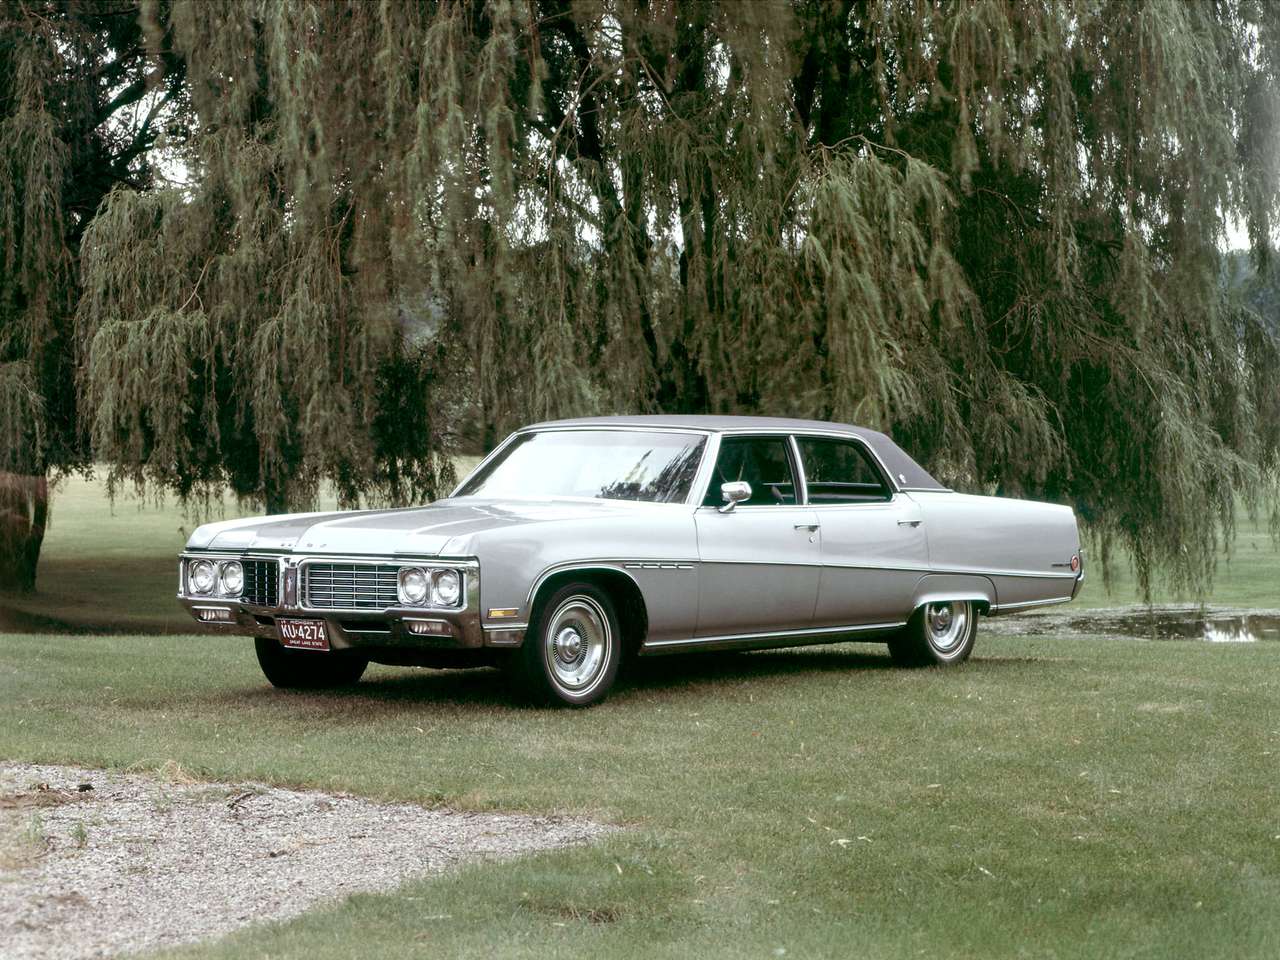 Buick Electra 225 седан 1970 року випуску онлайн пазл